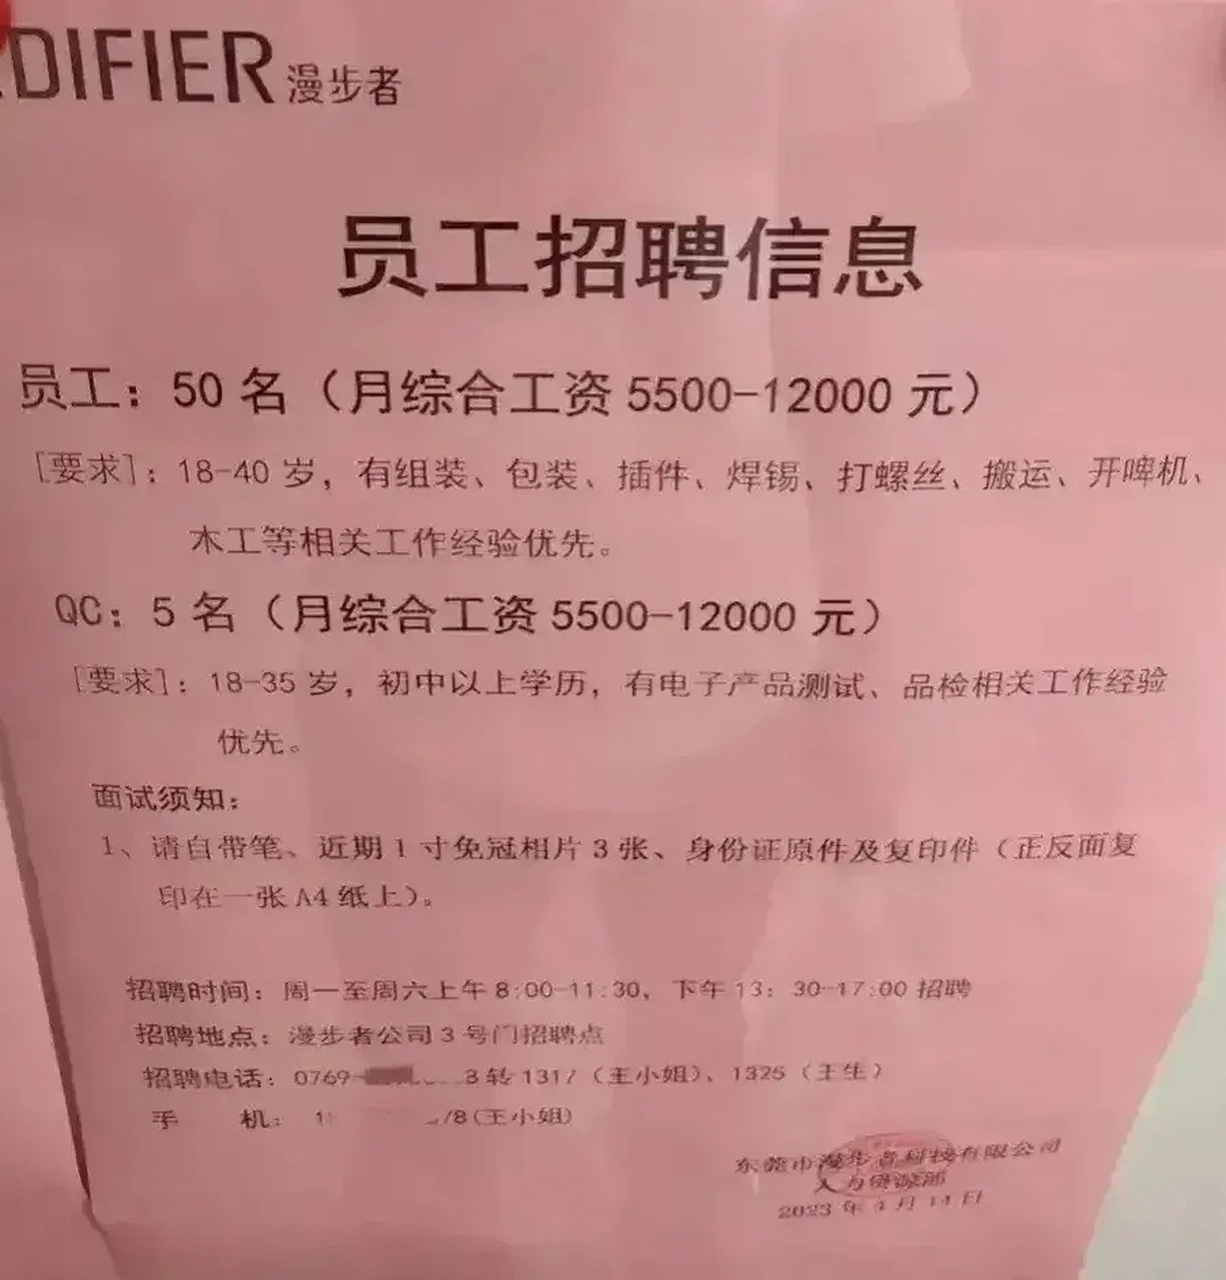 广东东莞一家电子厂开出员工工资5500